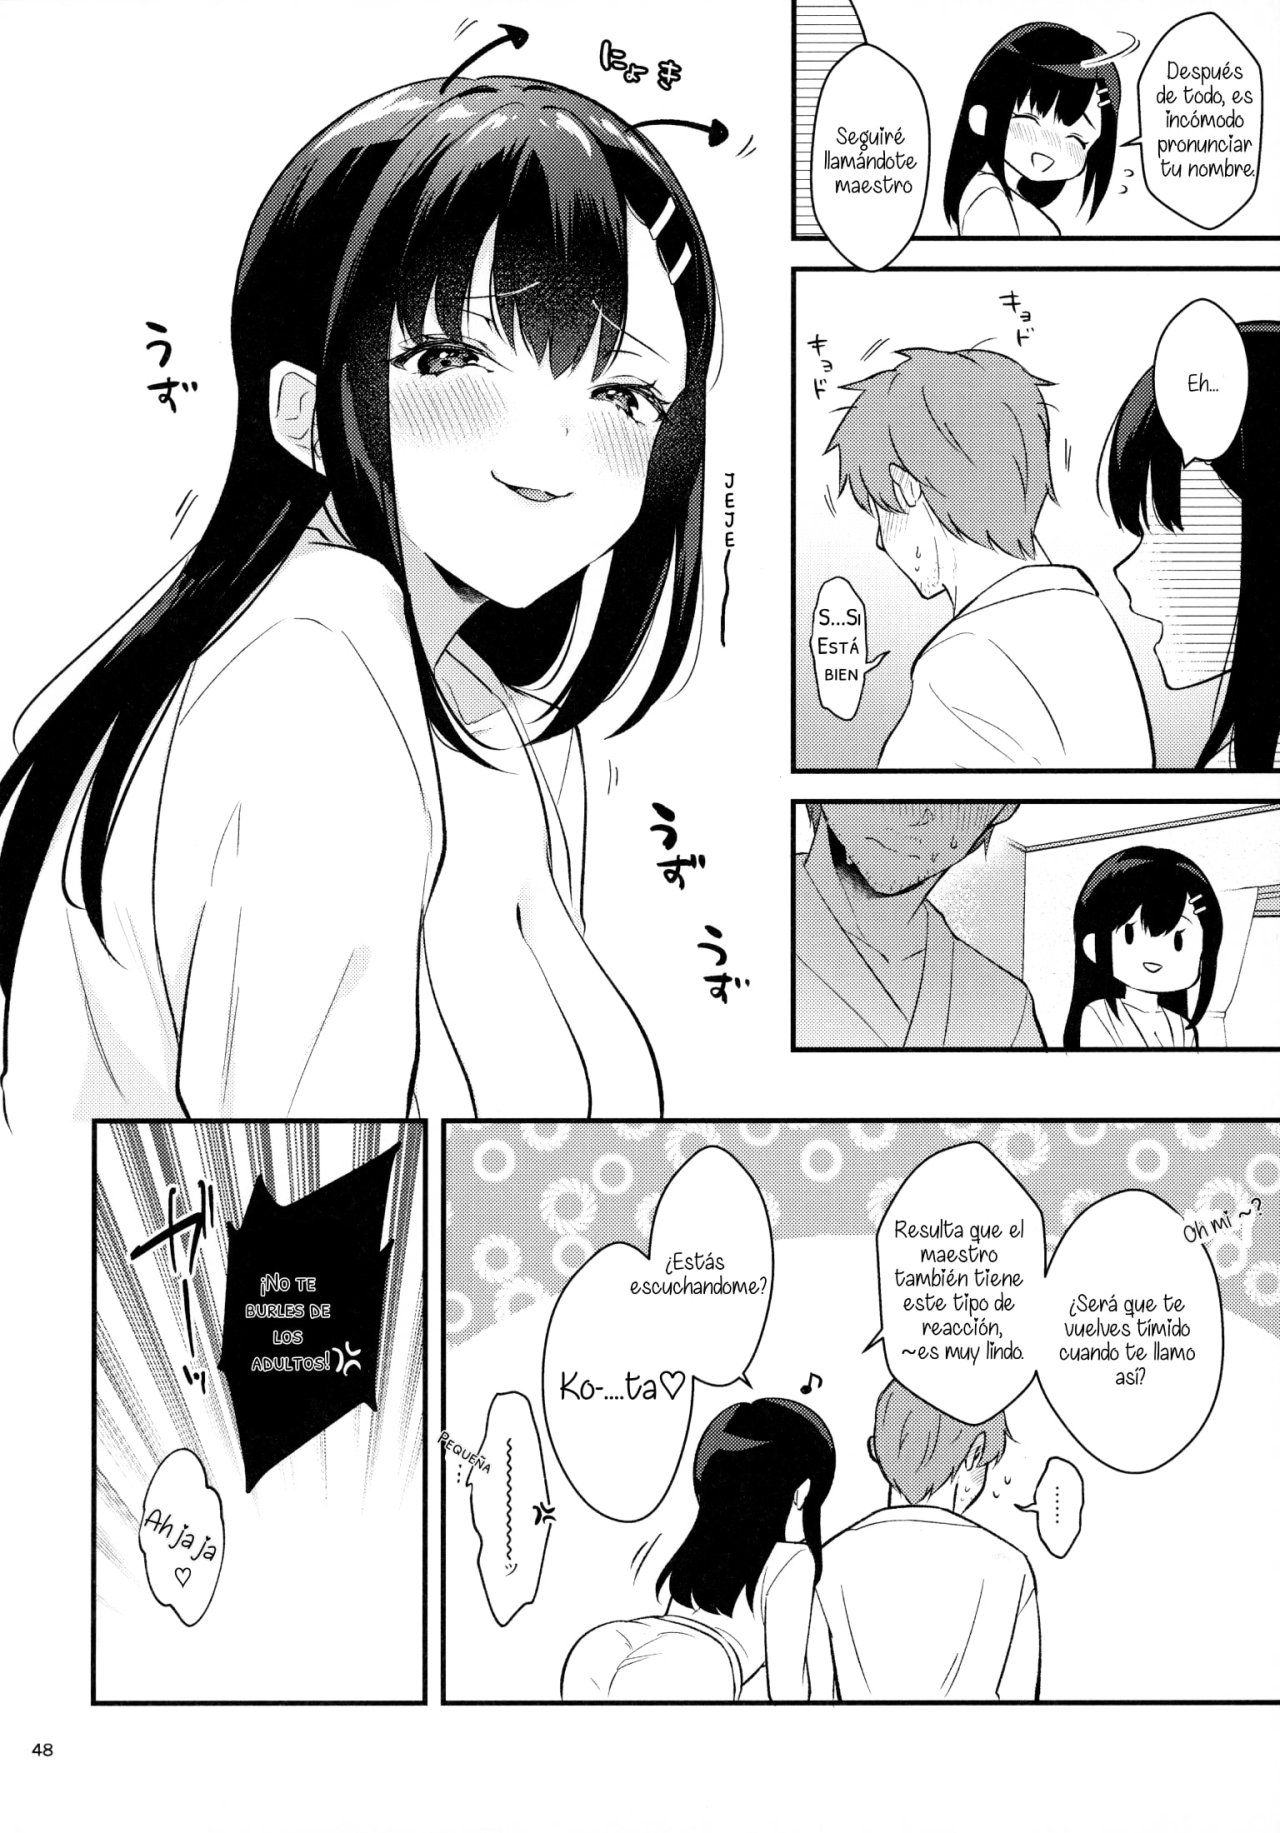 Sunshower-JK Miyako no Valentine Manga 3 - 46